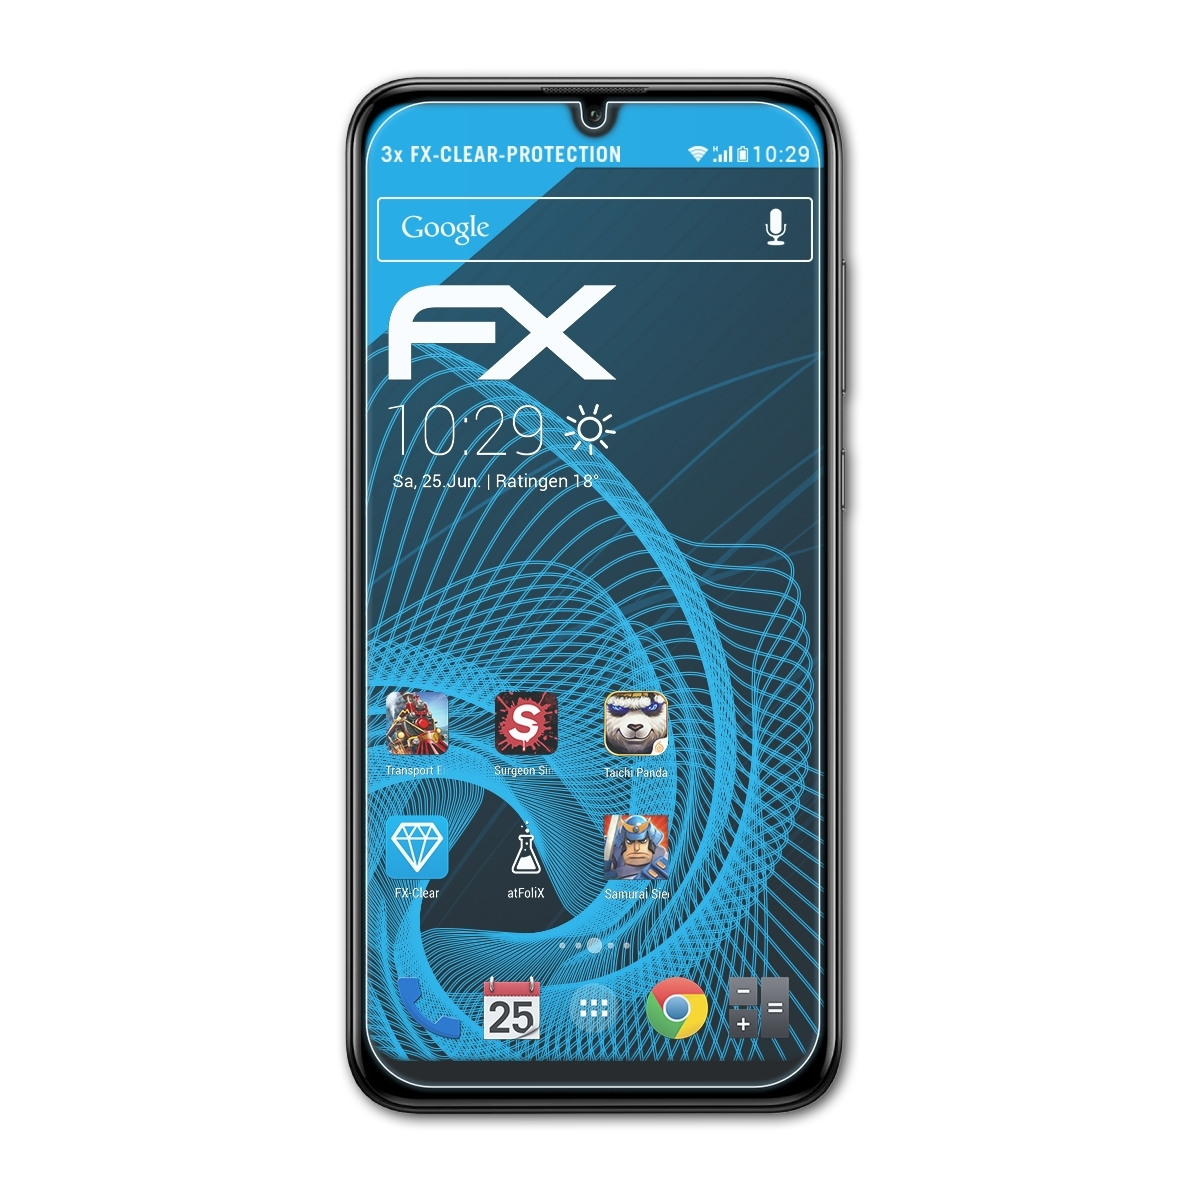 ATFOLIX 3x FX-Clear Huawei Prime Y7 Displayschutz(für 2019)